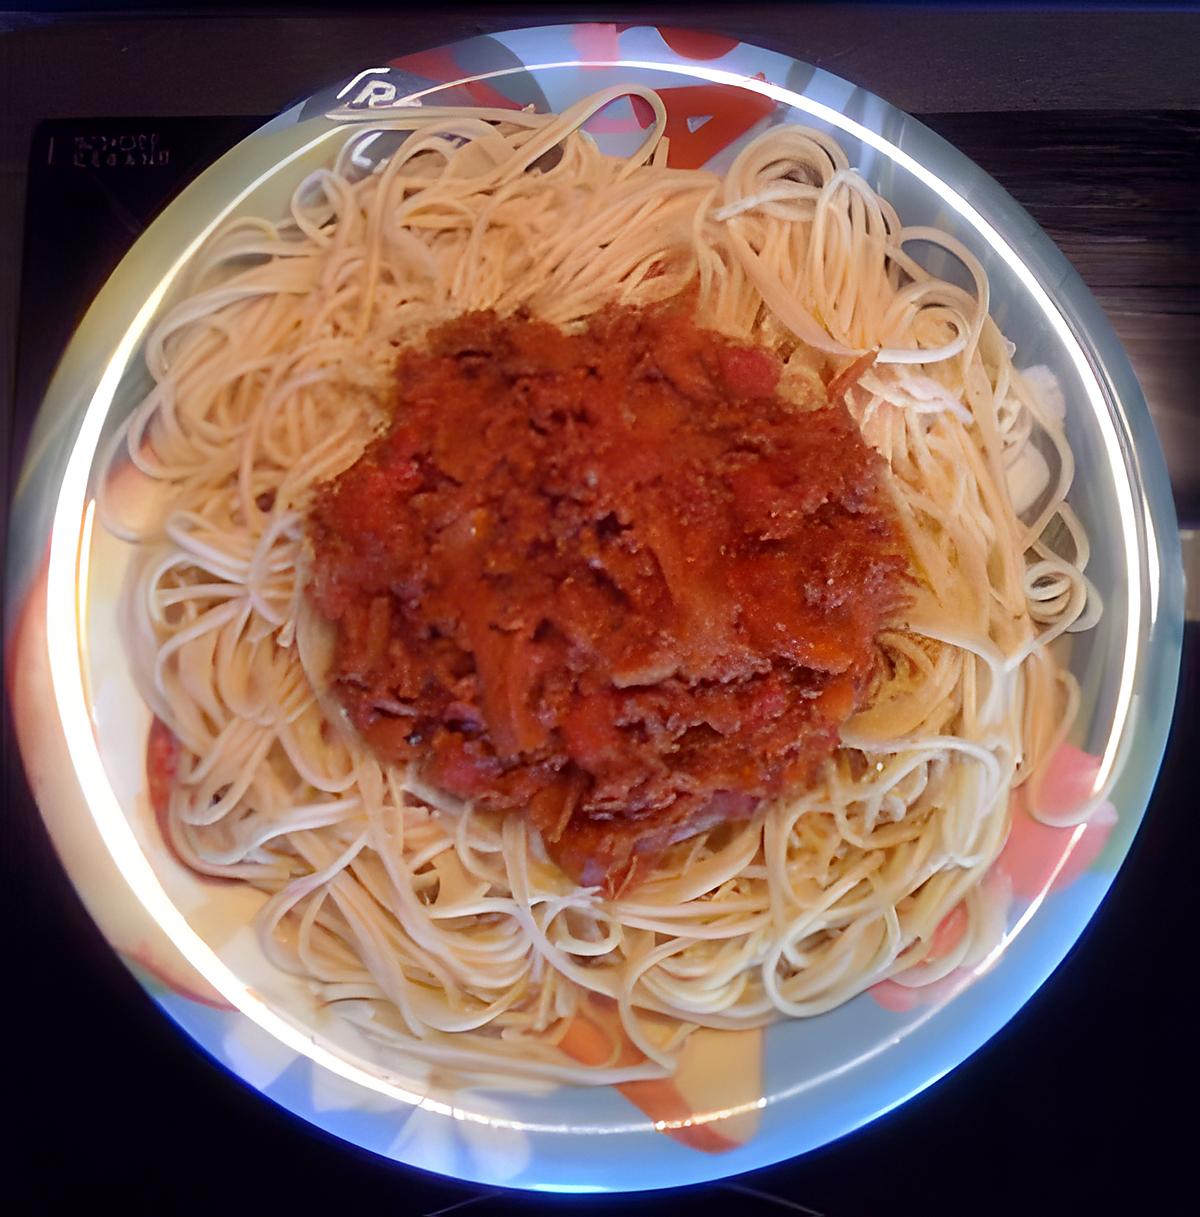 recette Spaguettis complets à la bolognaise 0%MG !